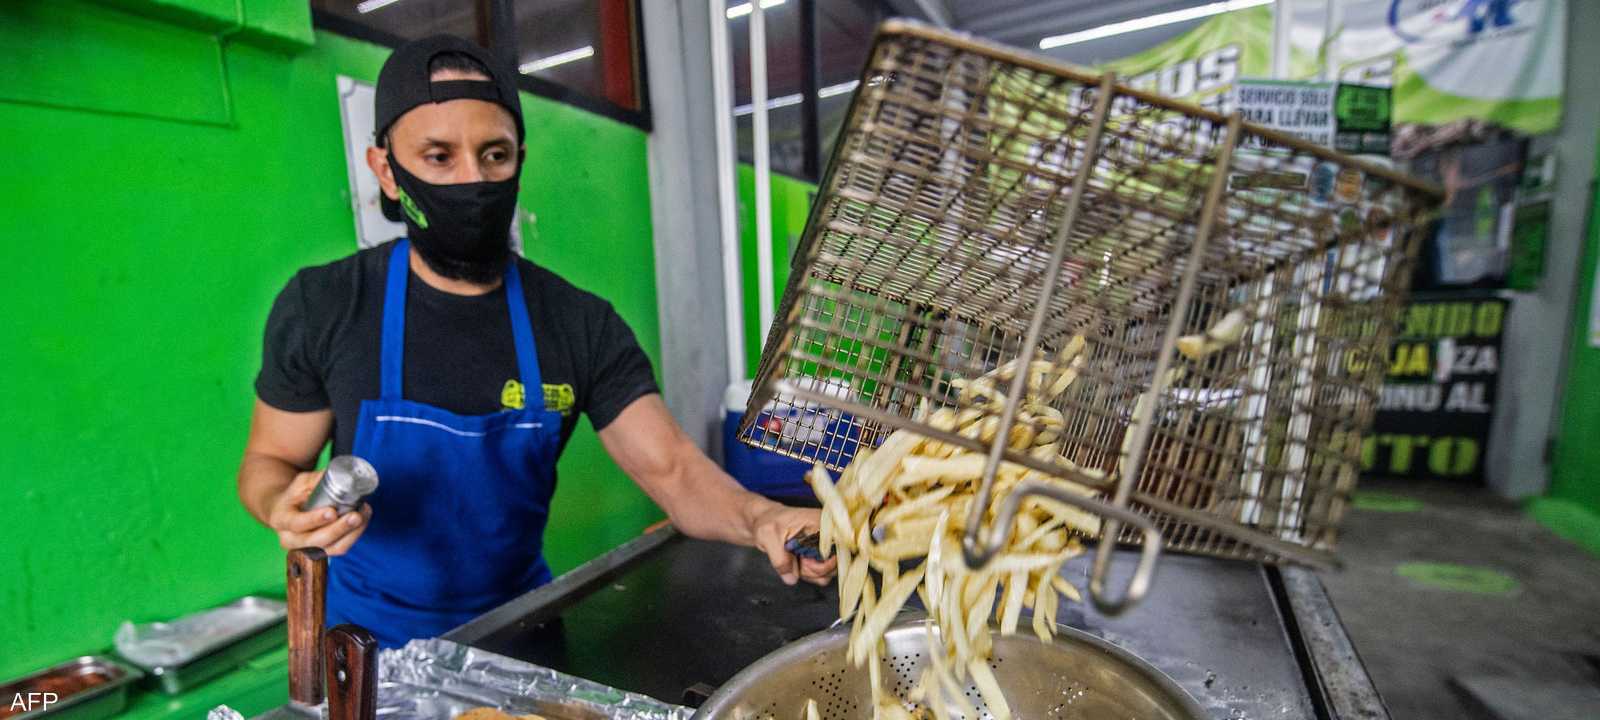 التضخم يرفع أسعار المأكولات الشعبية في المكسيك وبيرو